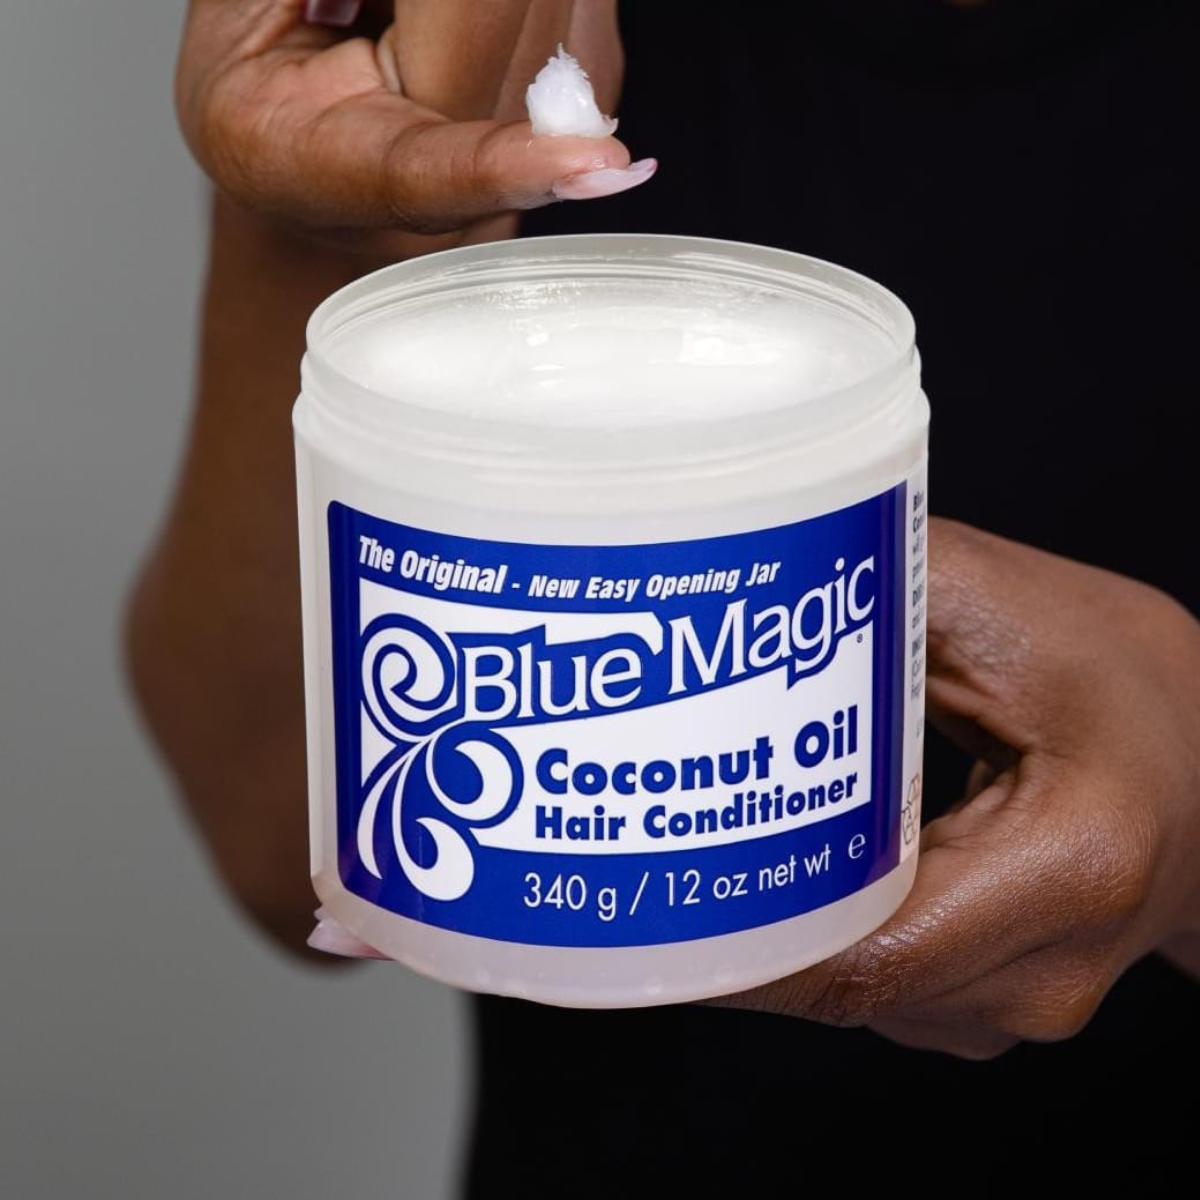 blue Magic hair conditioner coconut oil comprar en onlineshoppingcenterg Colombia centro de compras en linea osc 2